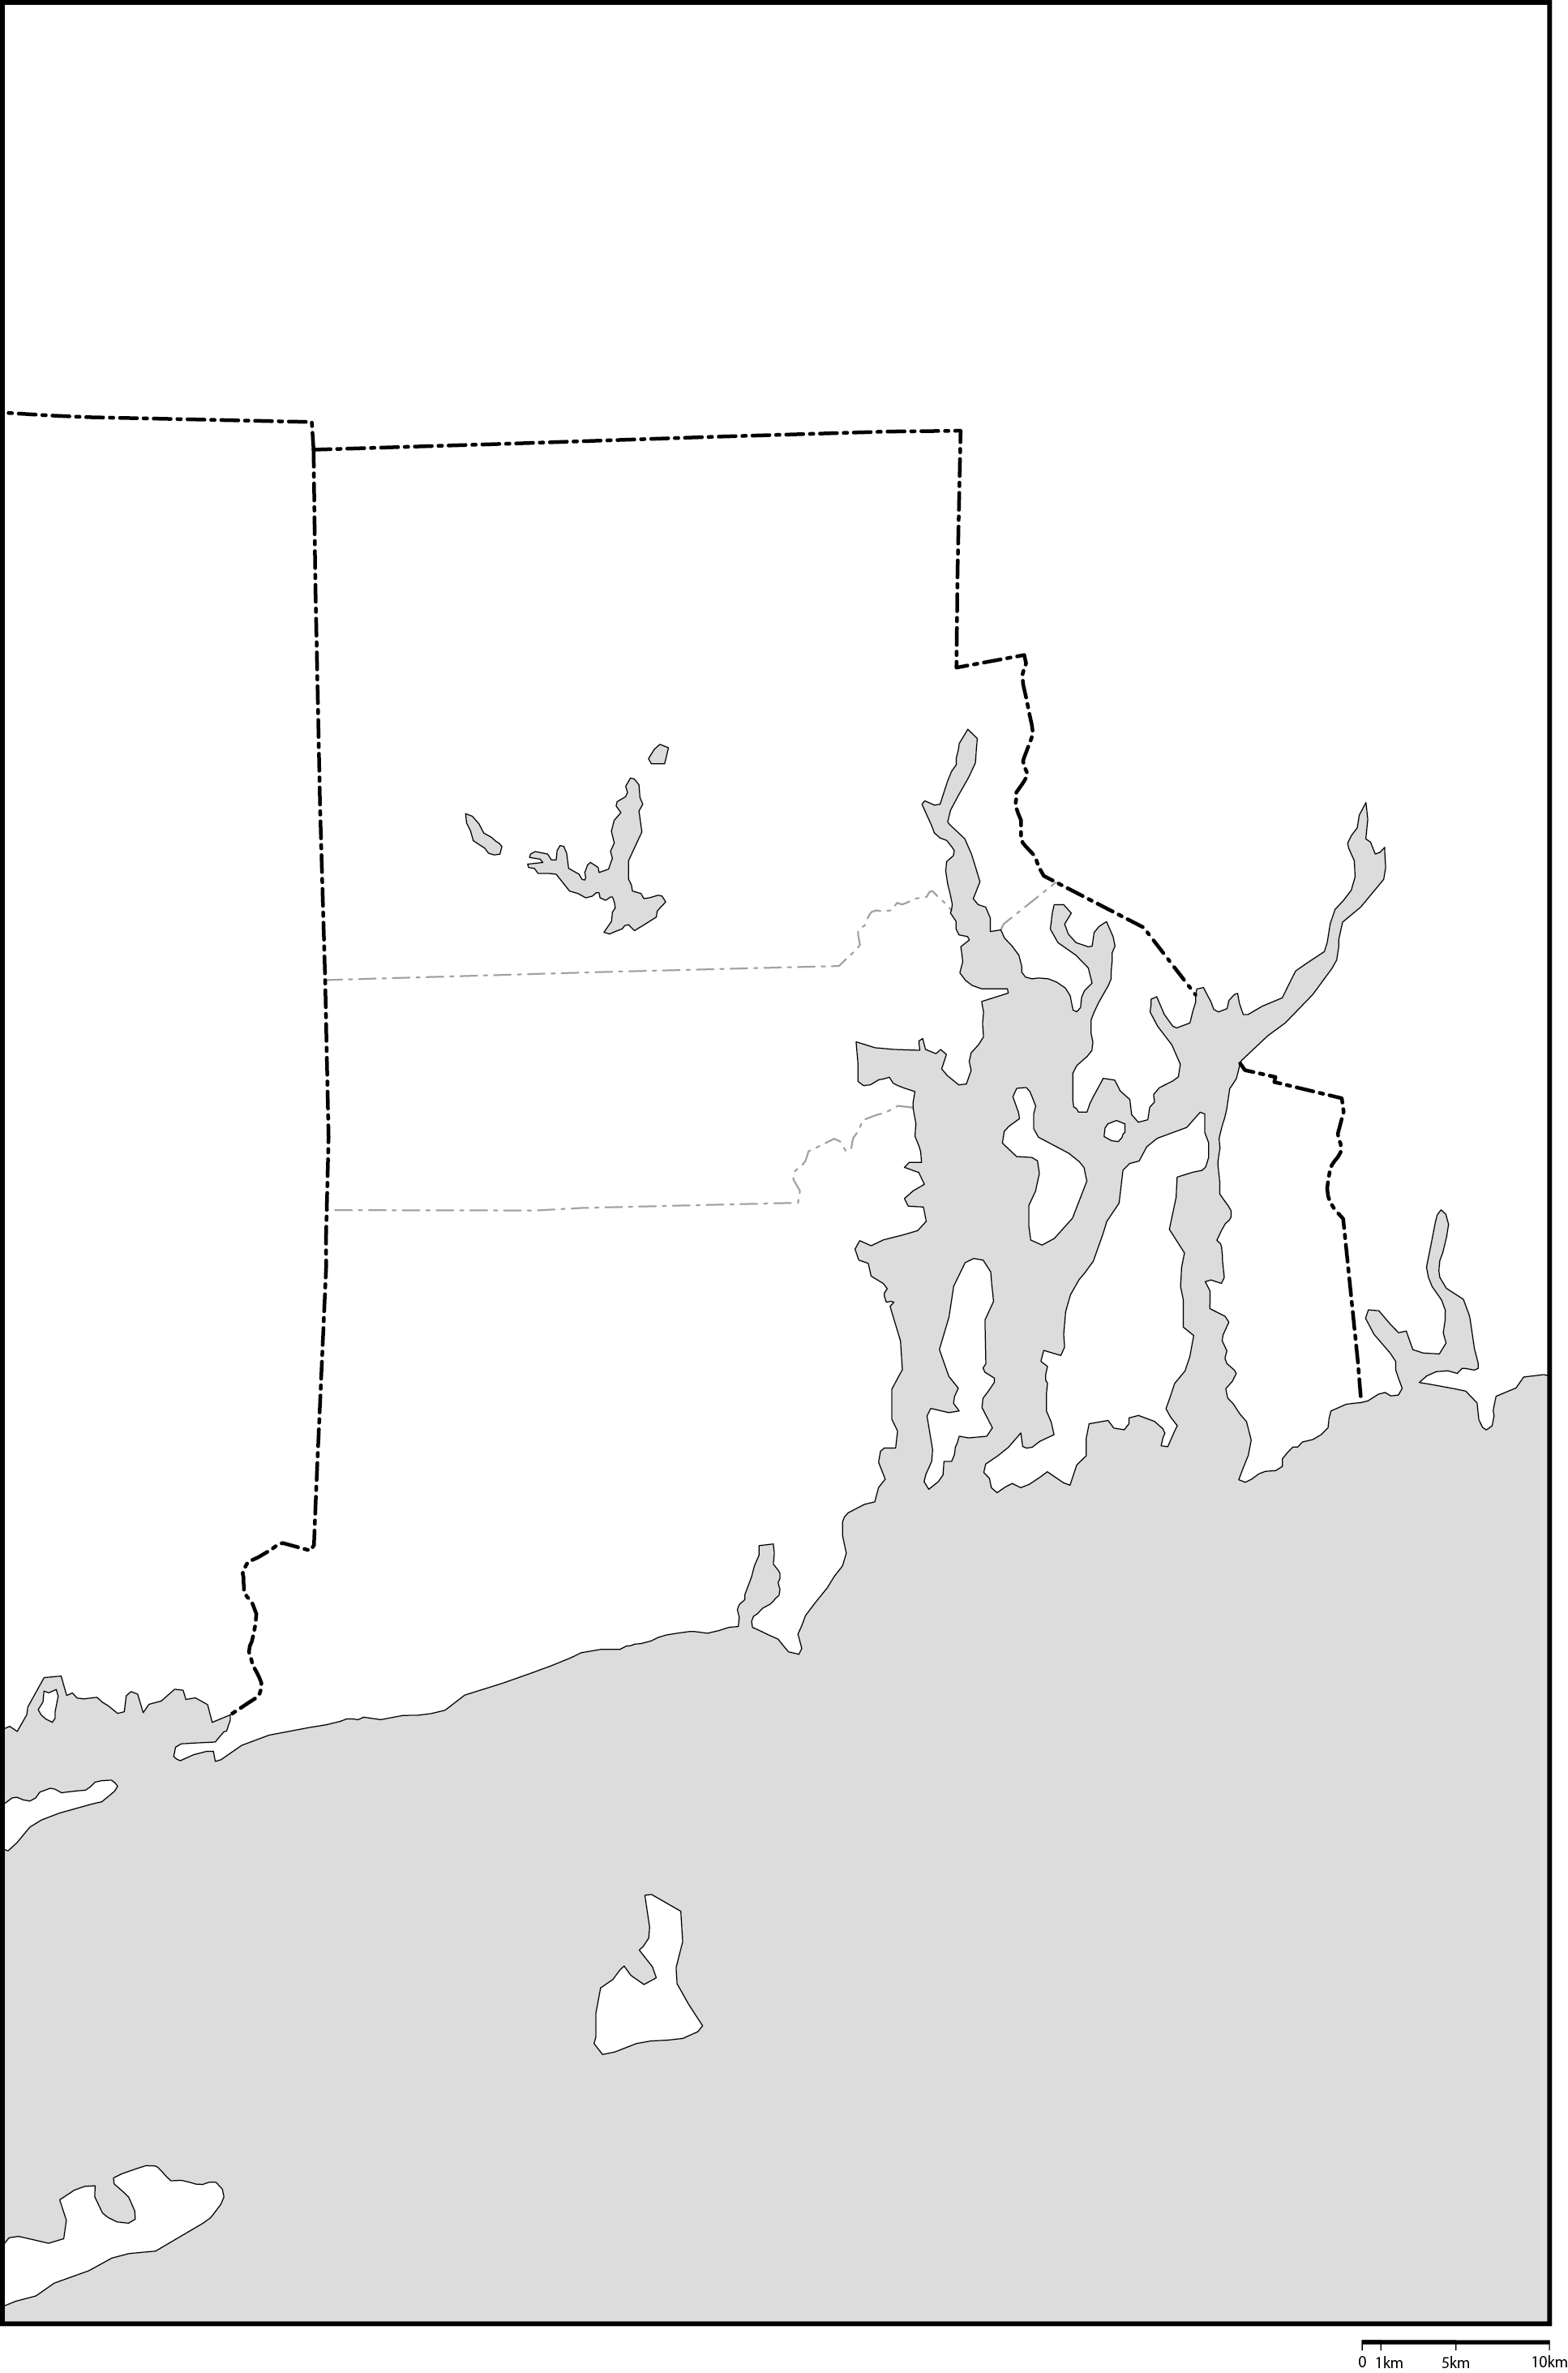 ロードアイランド州郡分け白地図フリーデータの画像